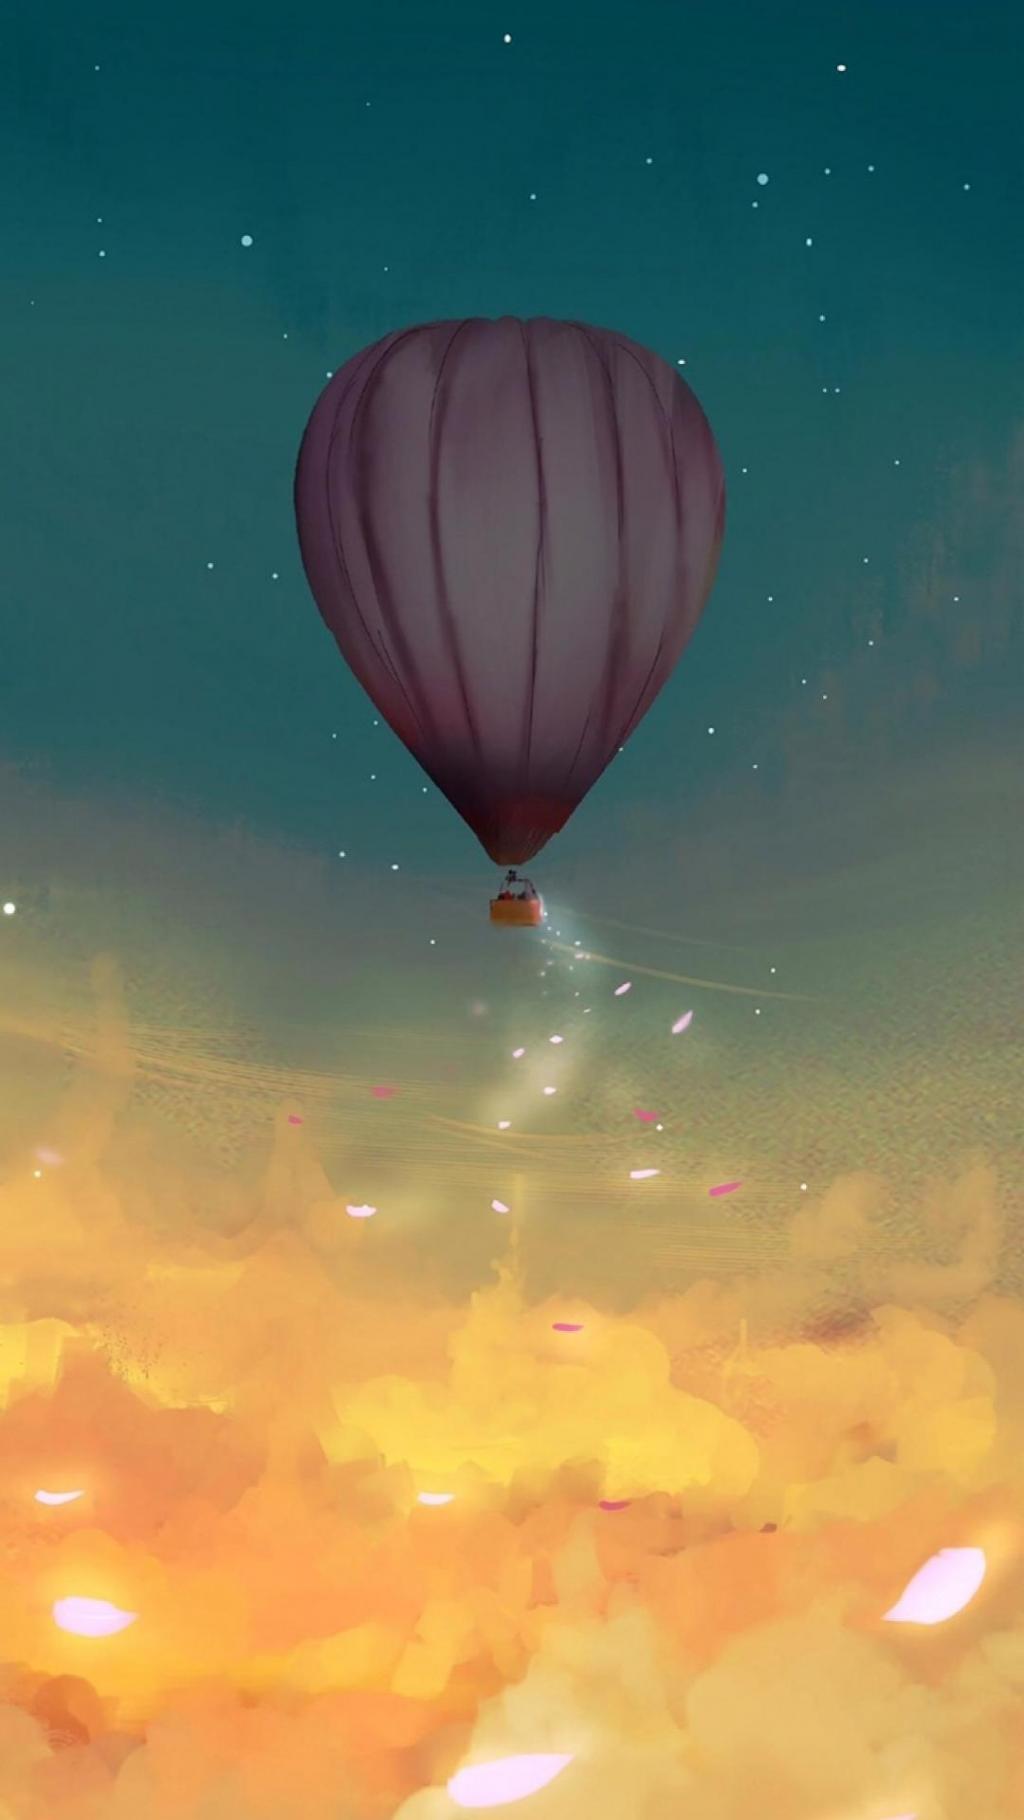 浪漫热气球唯美二次元场景手机壁纸